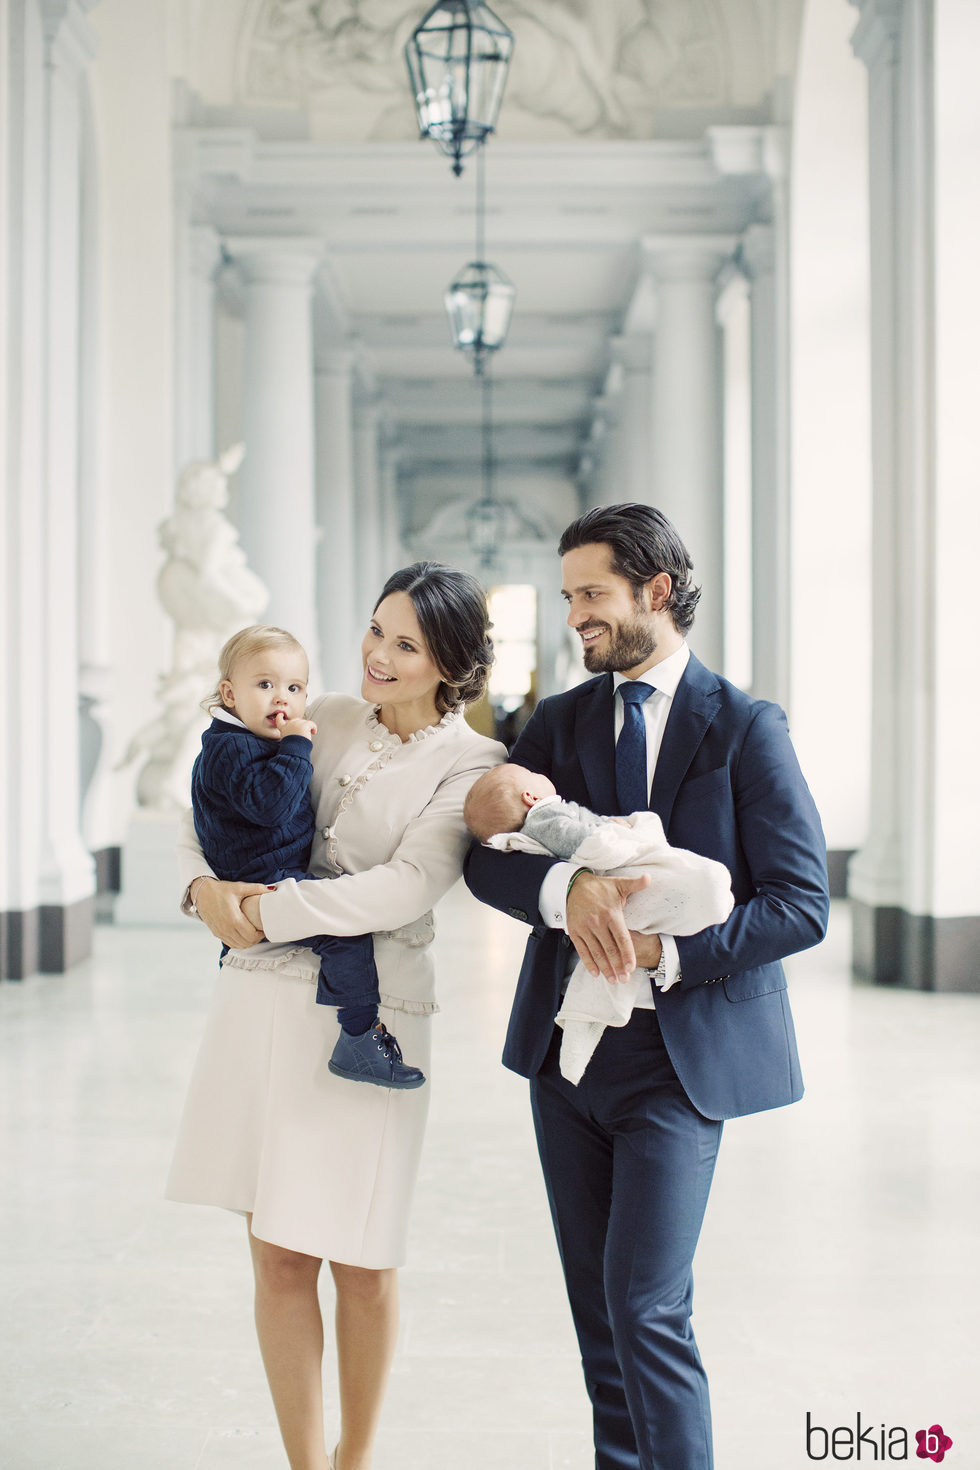 Primer posado familiar de Carlos Felipe de Suecia y Sofia Hellqvist con sus hijos Alejandro y Gabriel